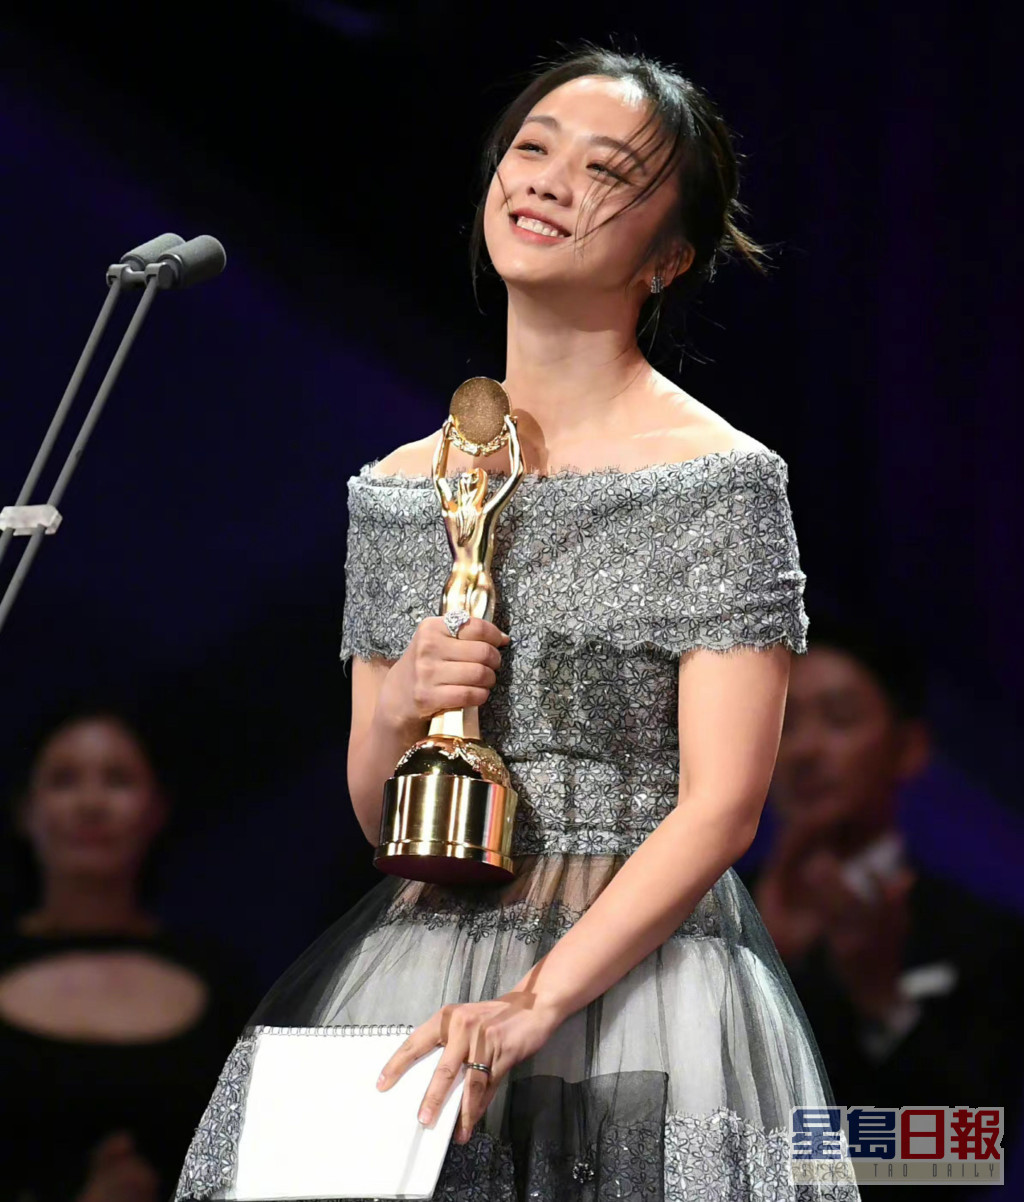 湯唯在韓國亦觀眾緣甚好，憑住《分手的決心》更橫掃多個頒獎禮的影后寶座，包括韓國三大頒獎禮之一的「青龍電影獎」。